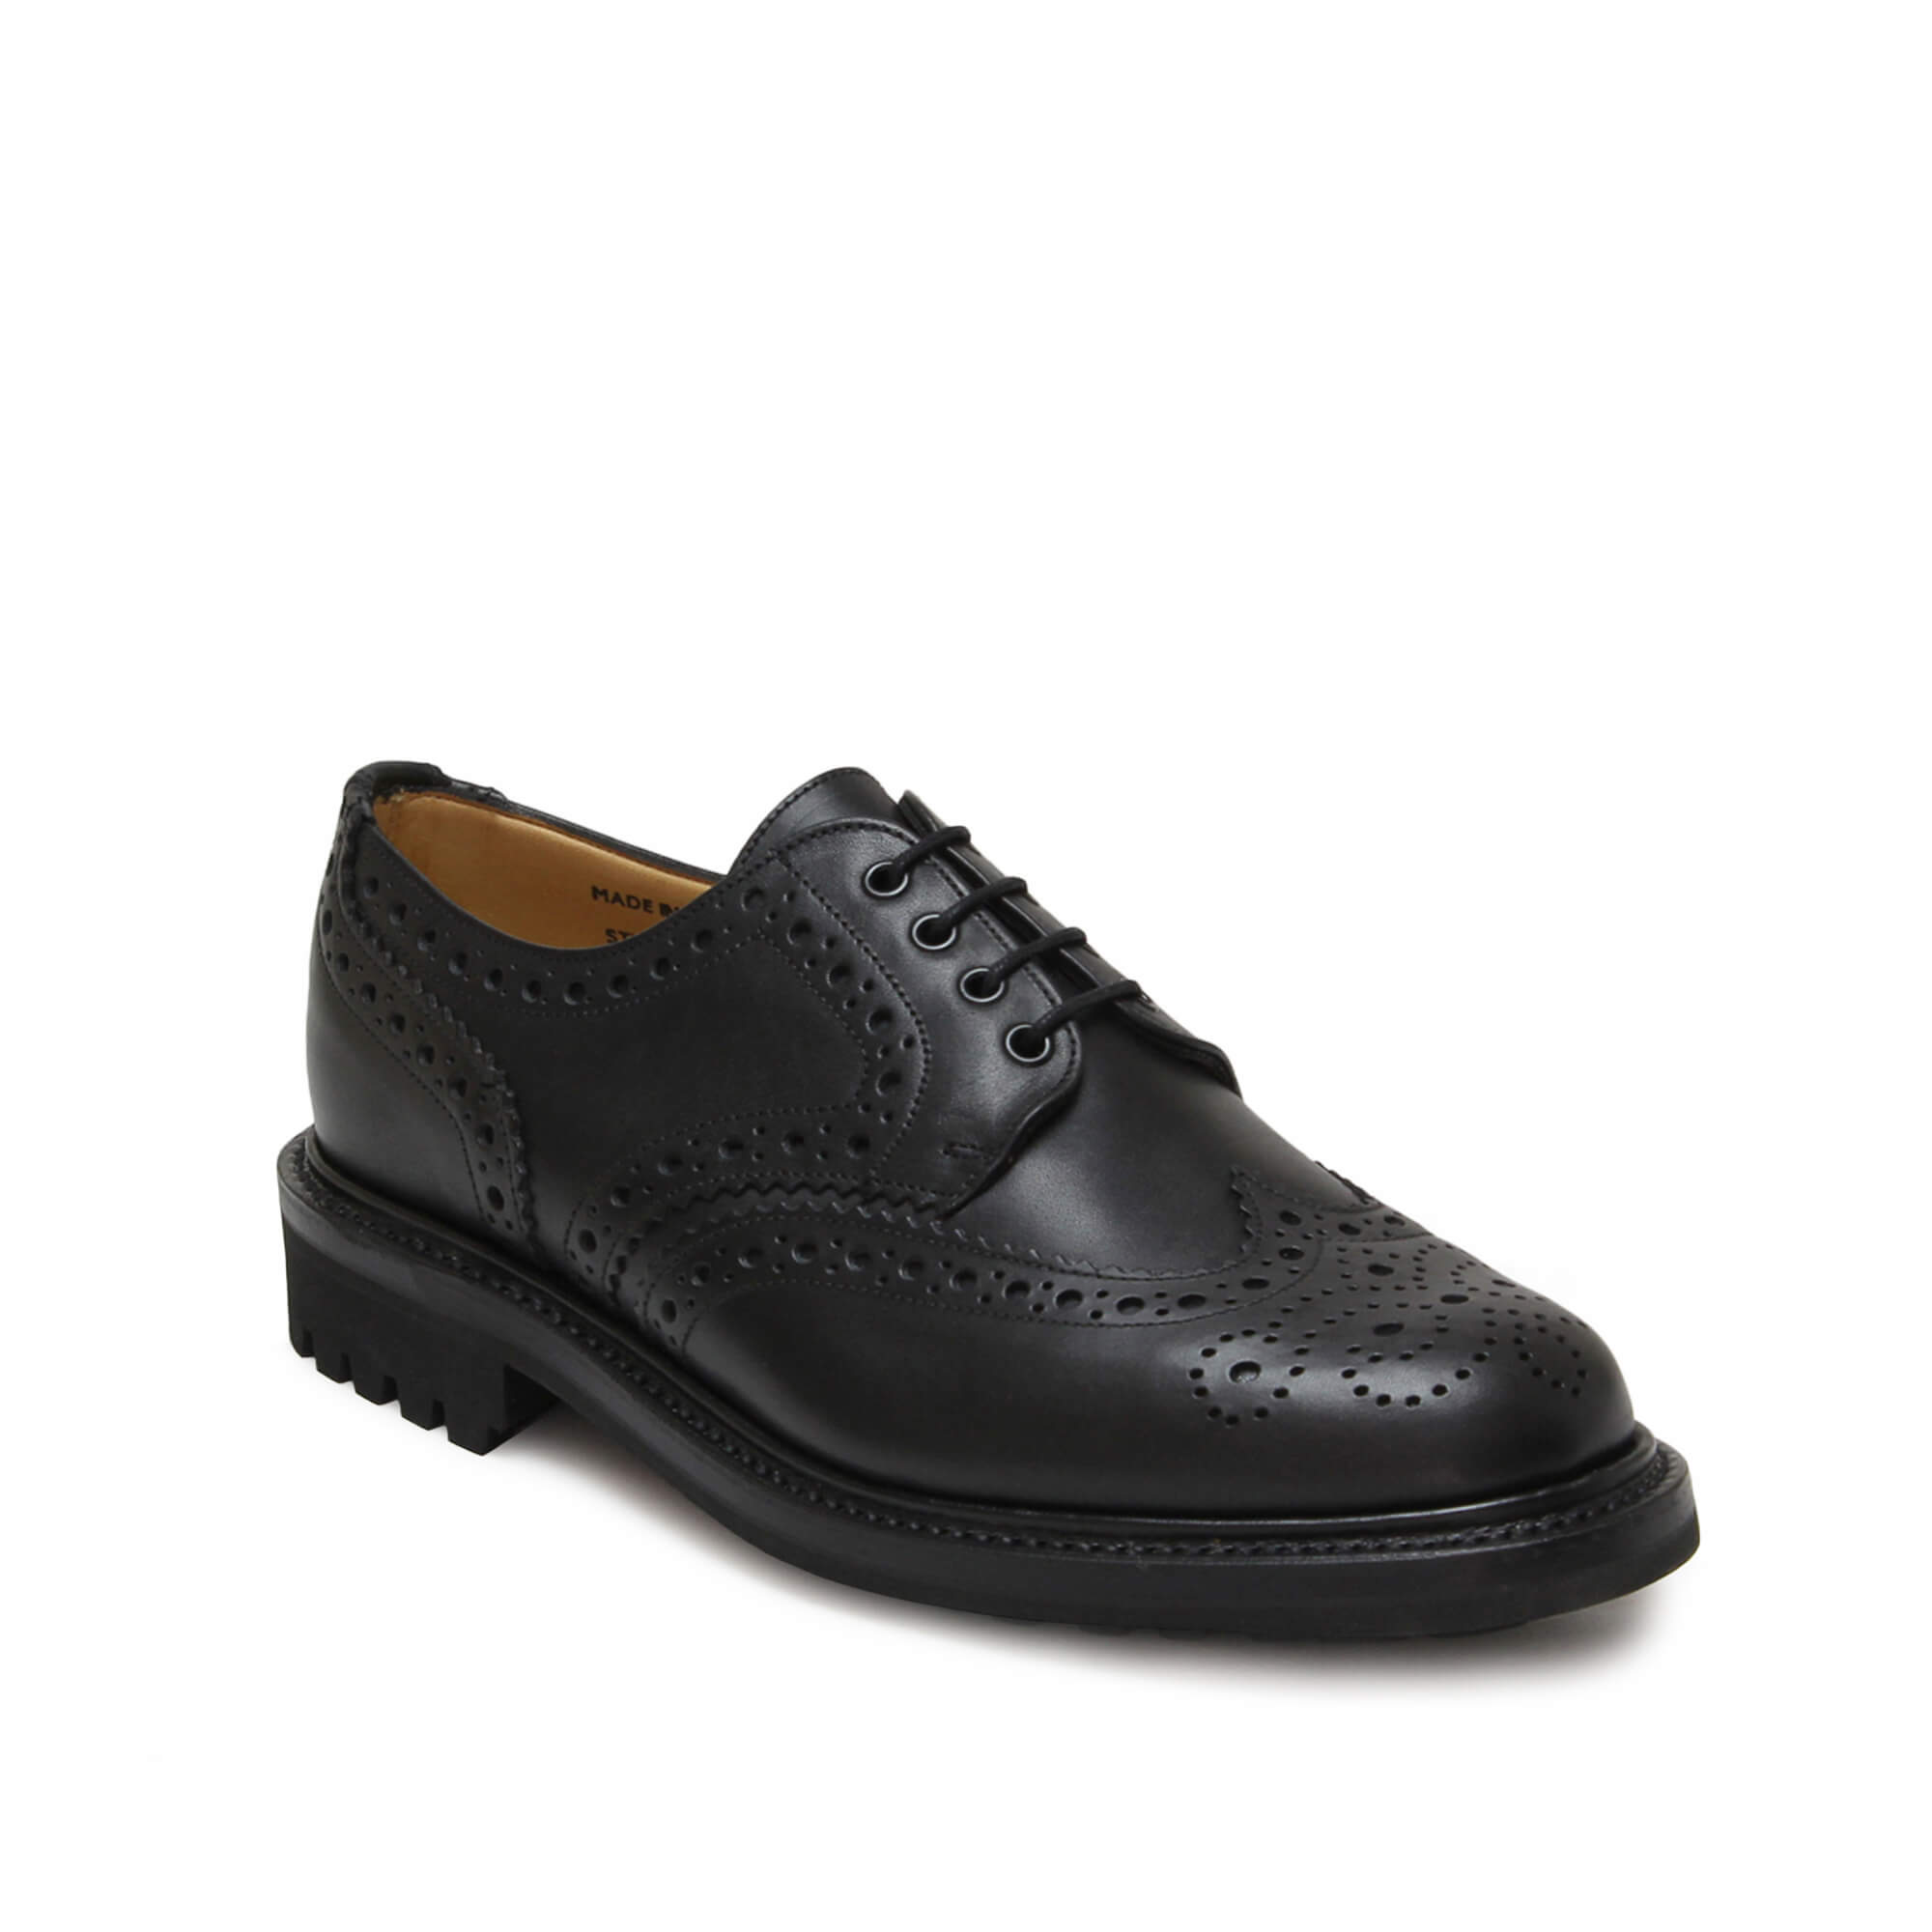 Sanders Salisbury – British Shoe Company